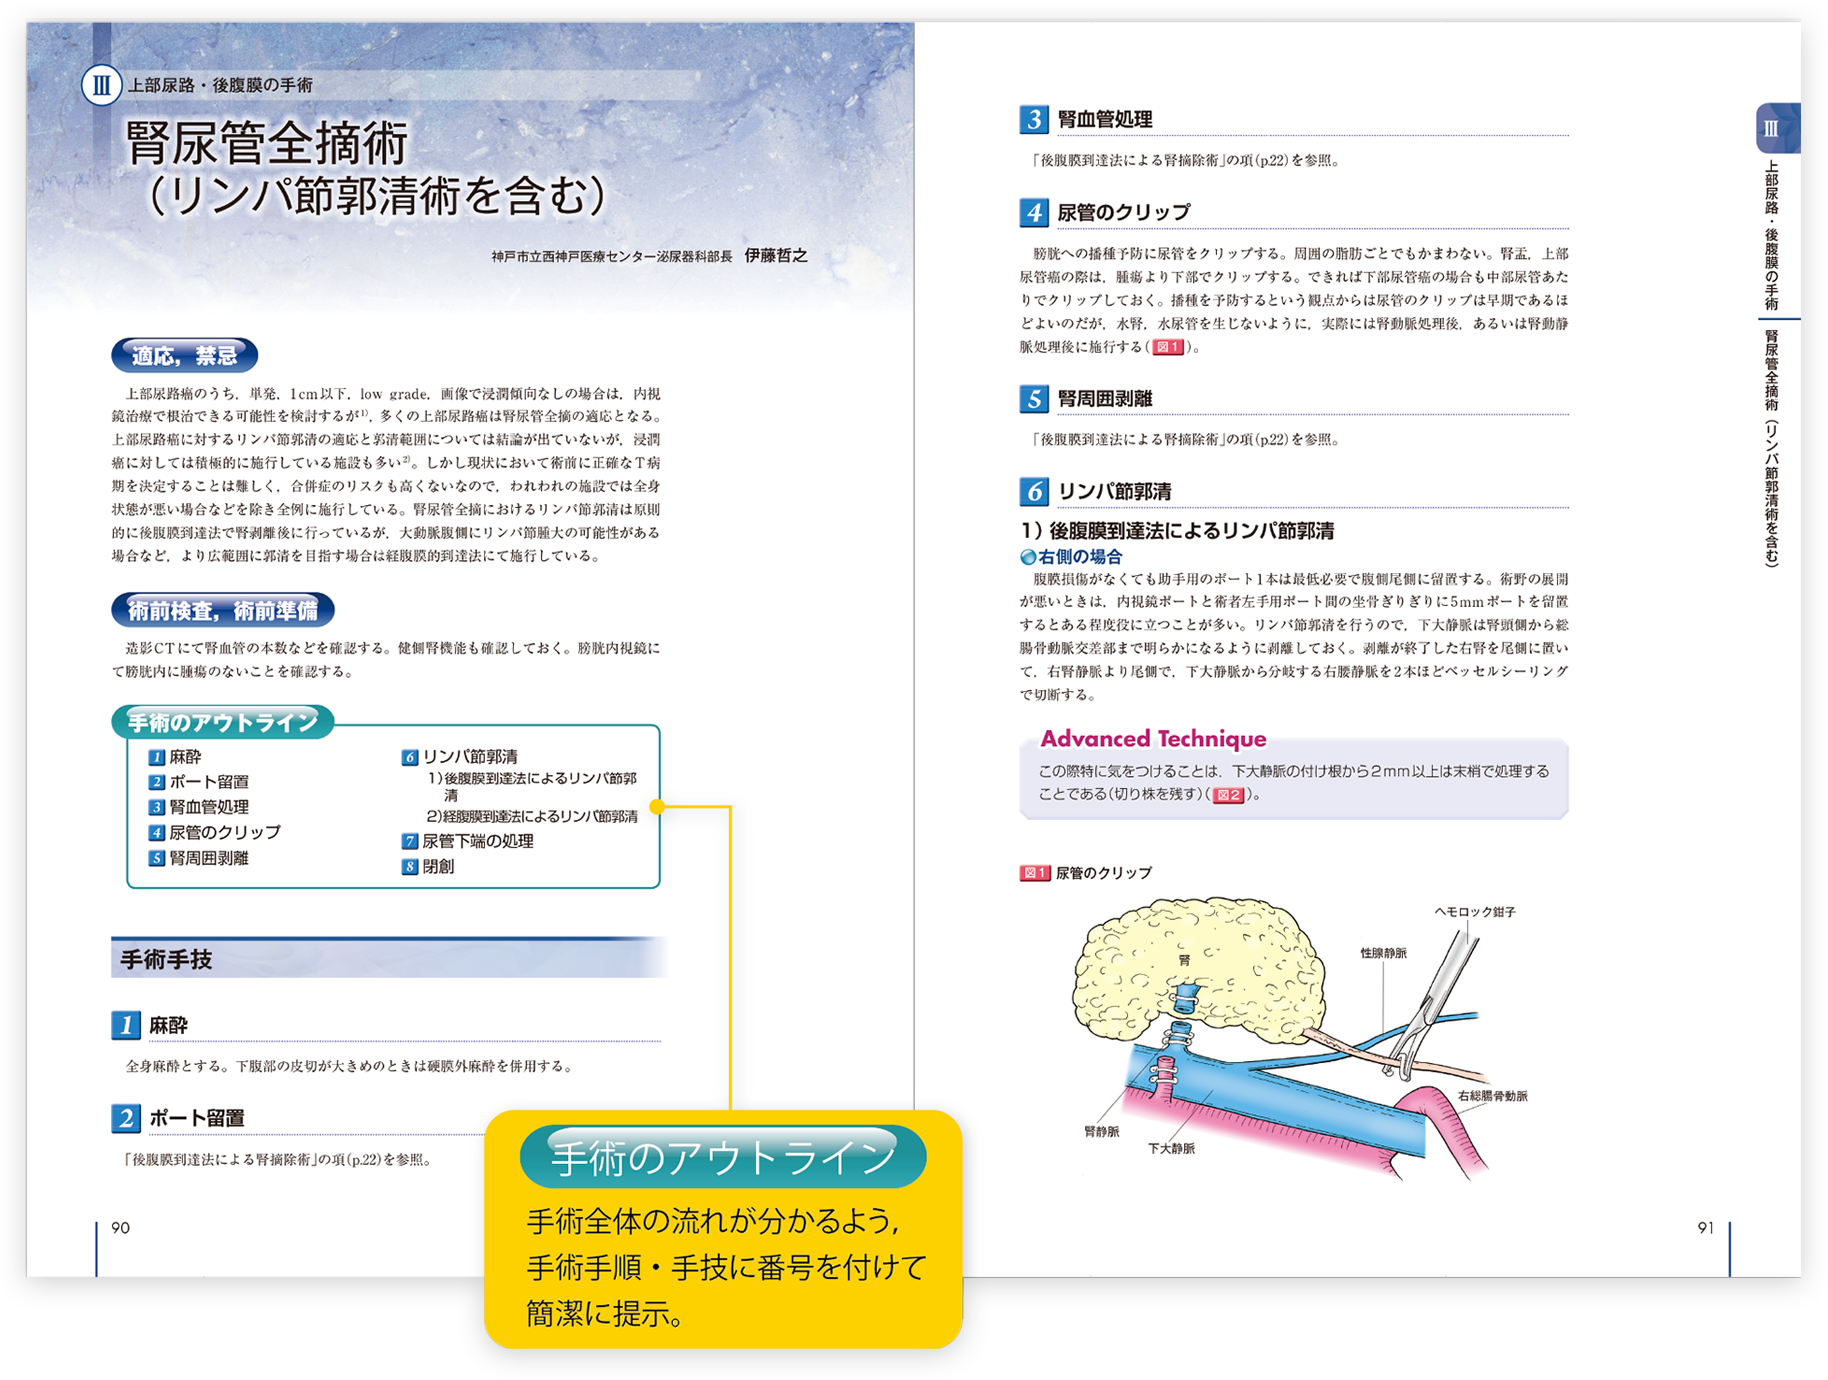 メジカルビュー社 | Urologic Surgery Next